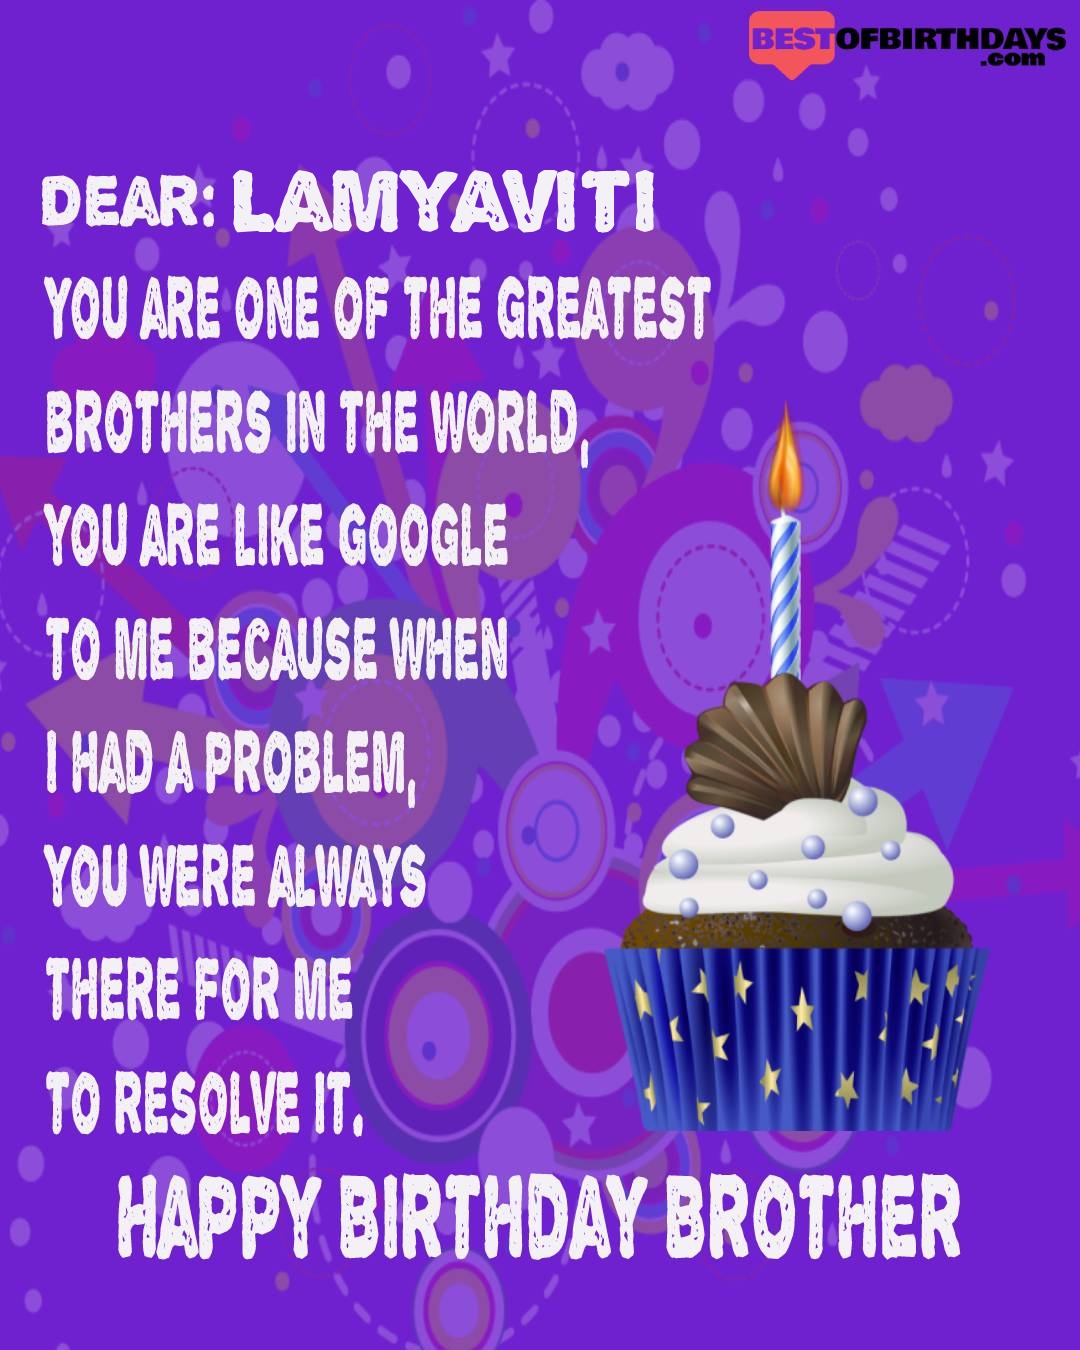 Happy birthday lamyaviti bhai brother bro